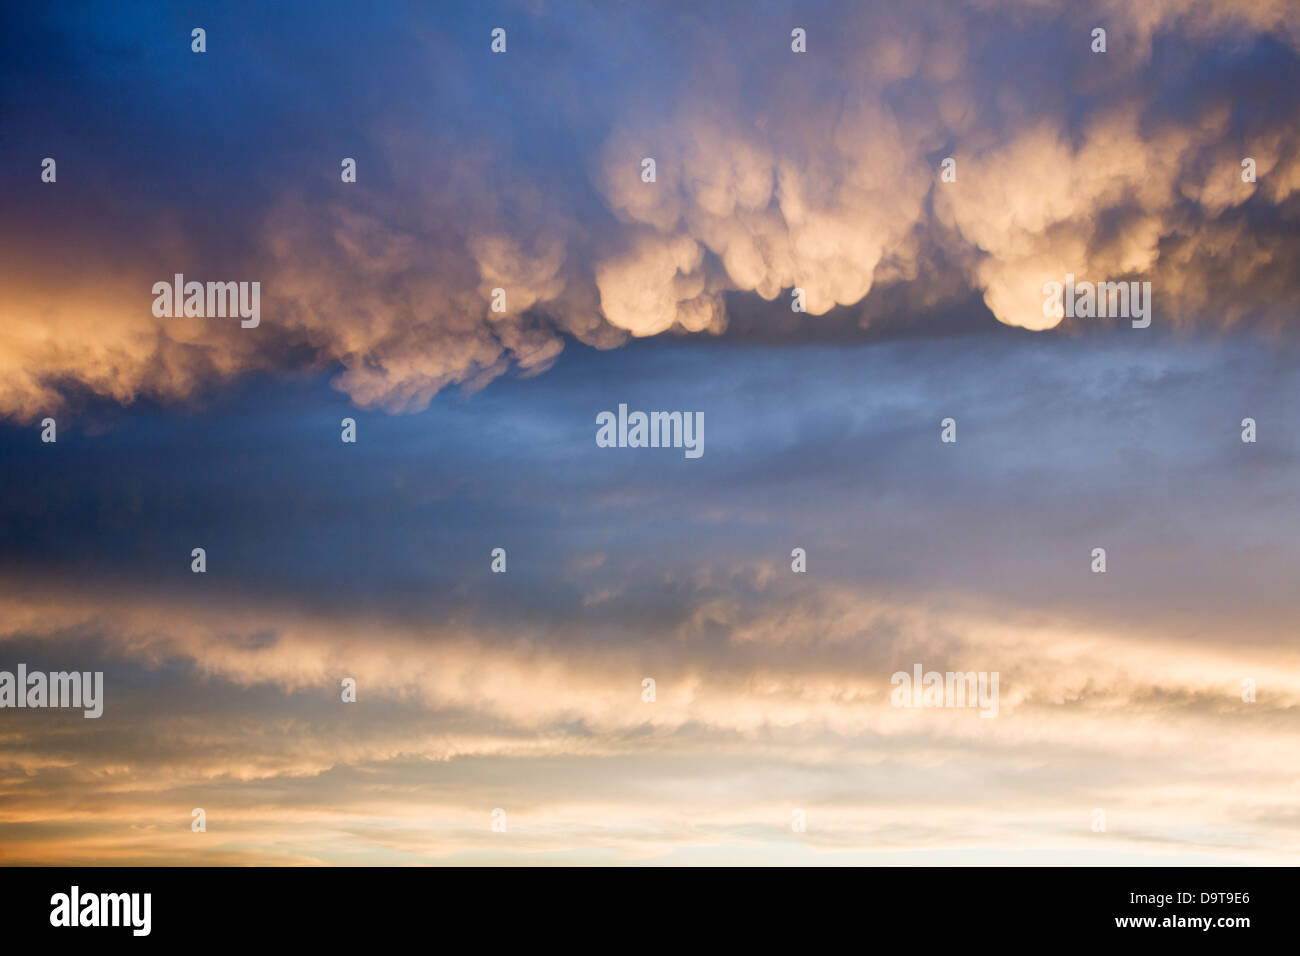 Eine spektakuläre Darstellung der Cumulonimbus Mammatus Wolken bei Sonnenuntergang. Stockfoto